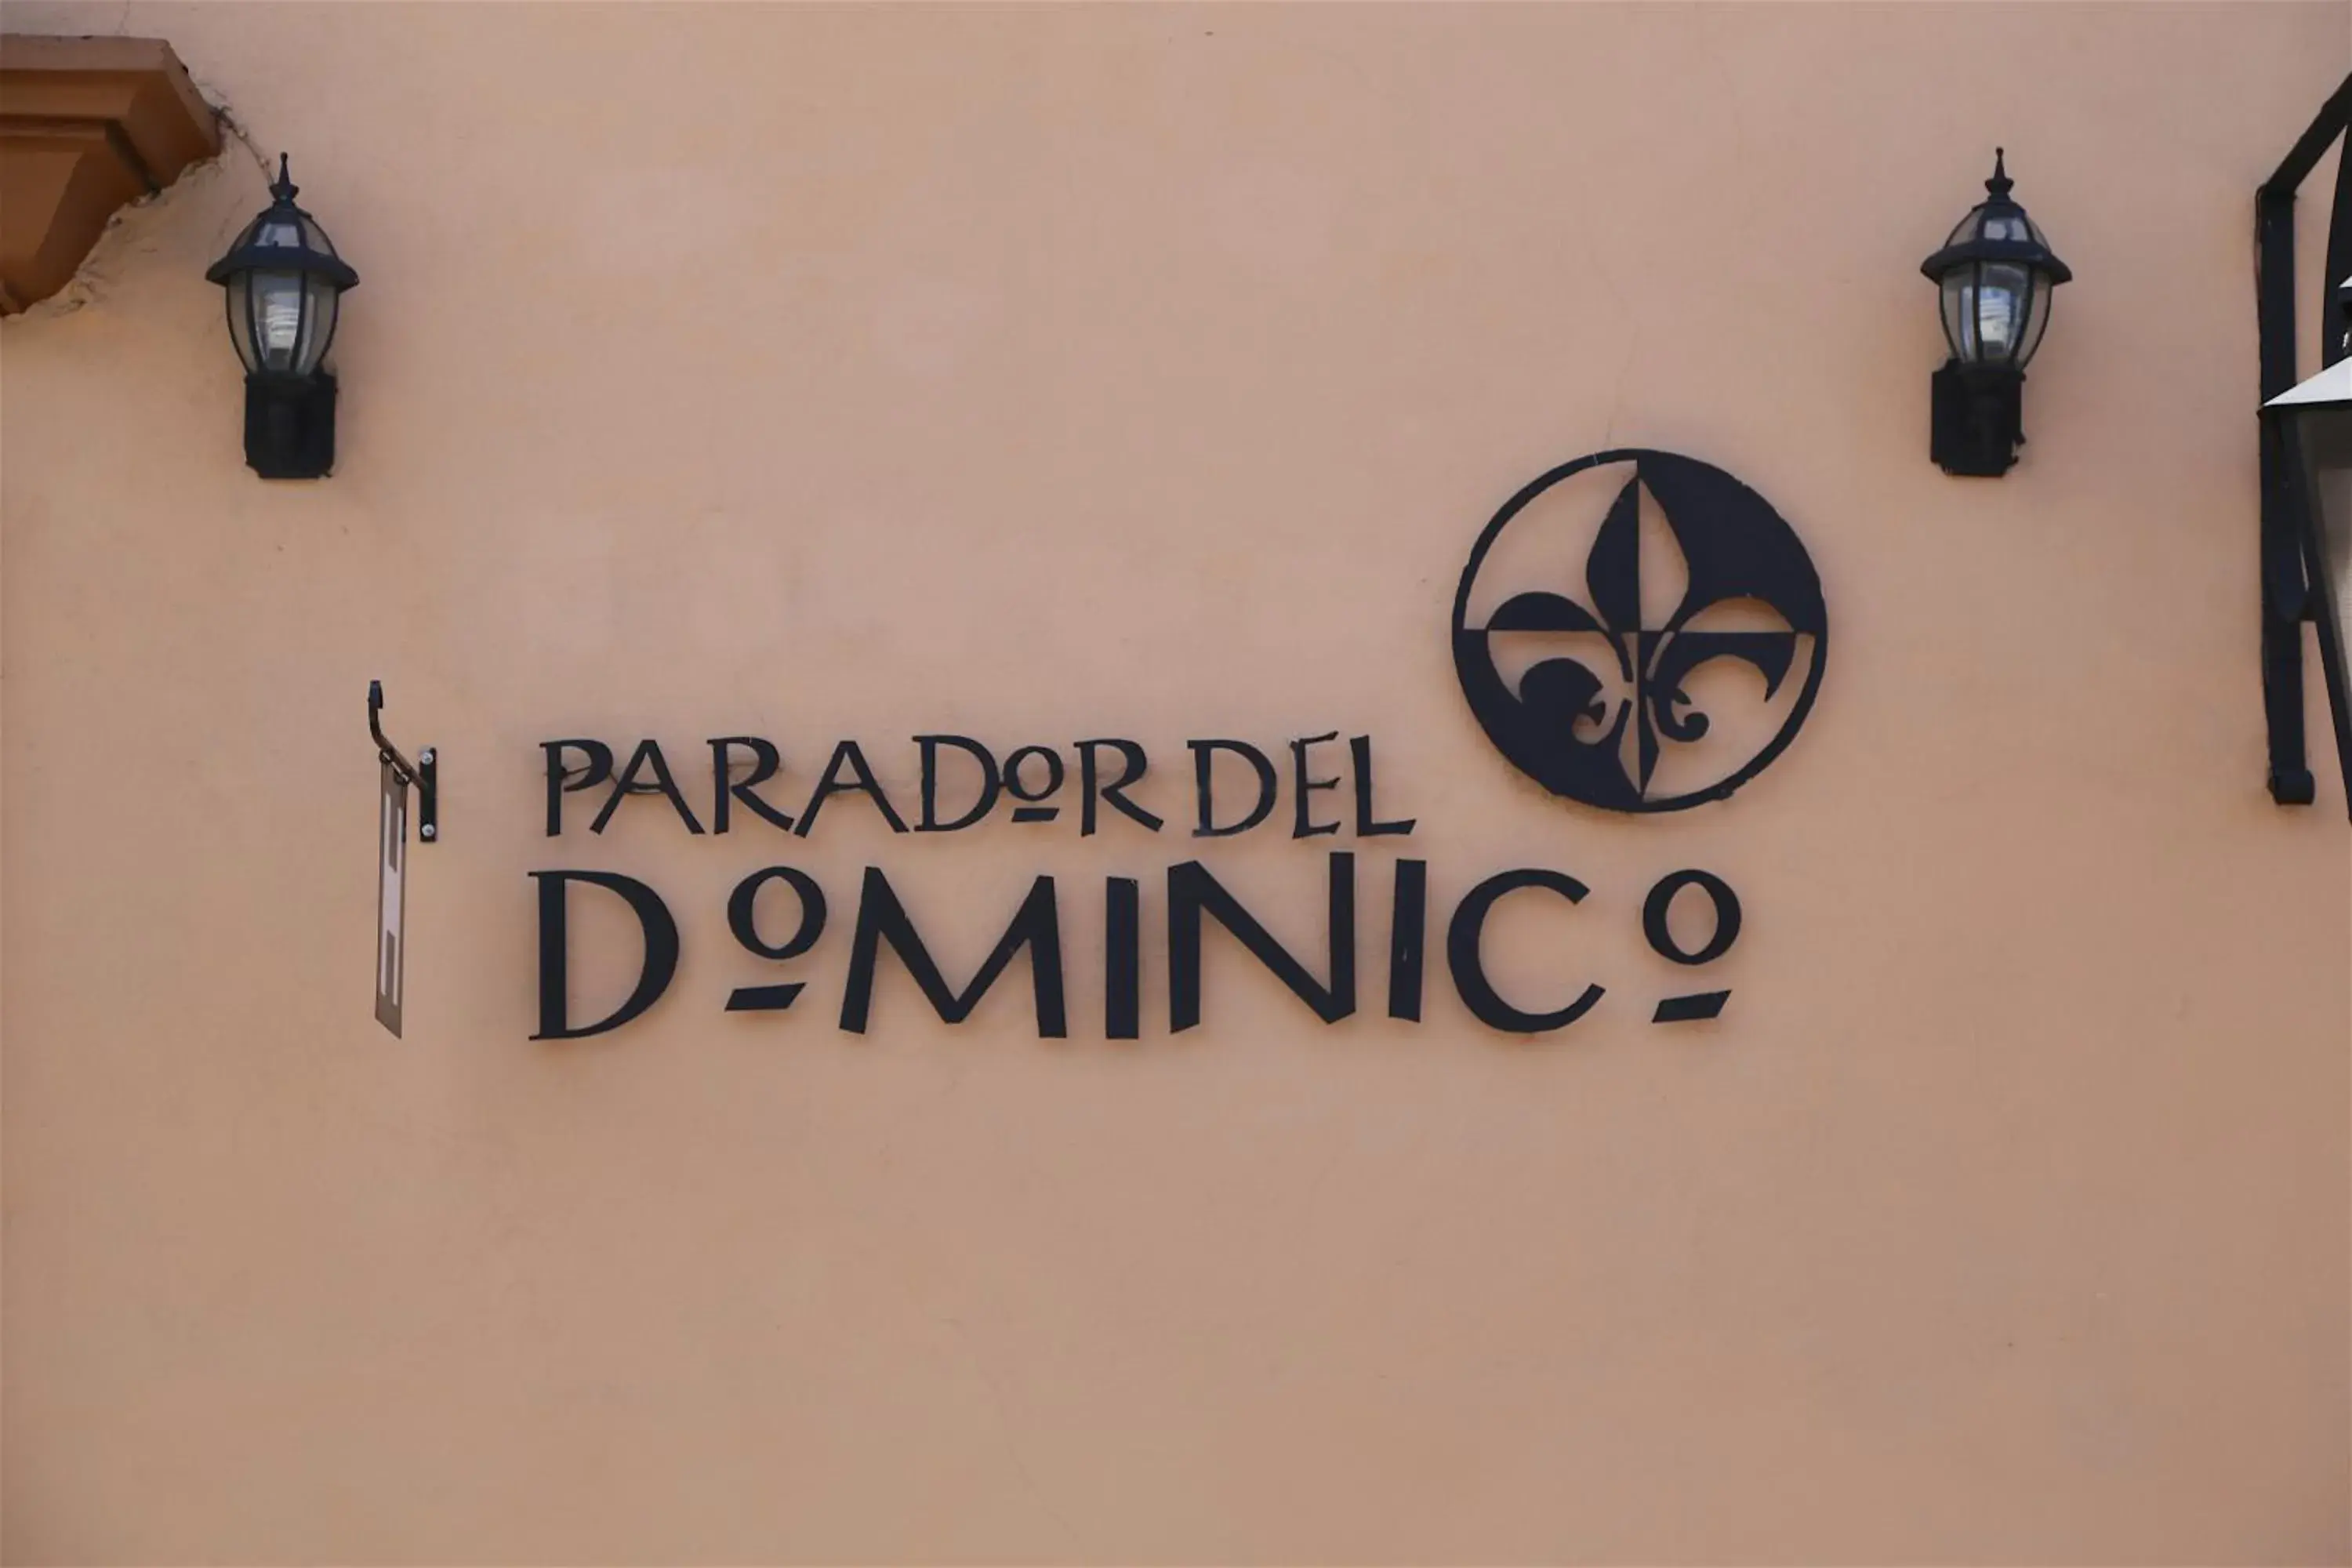 Property logo or sign in Parador del Dominico